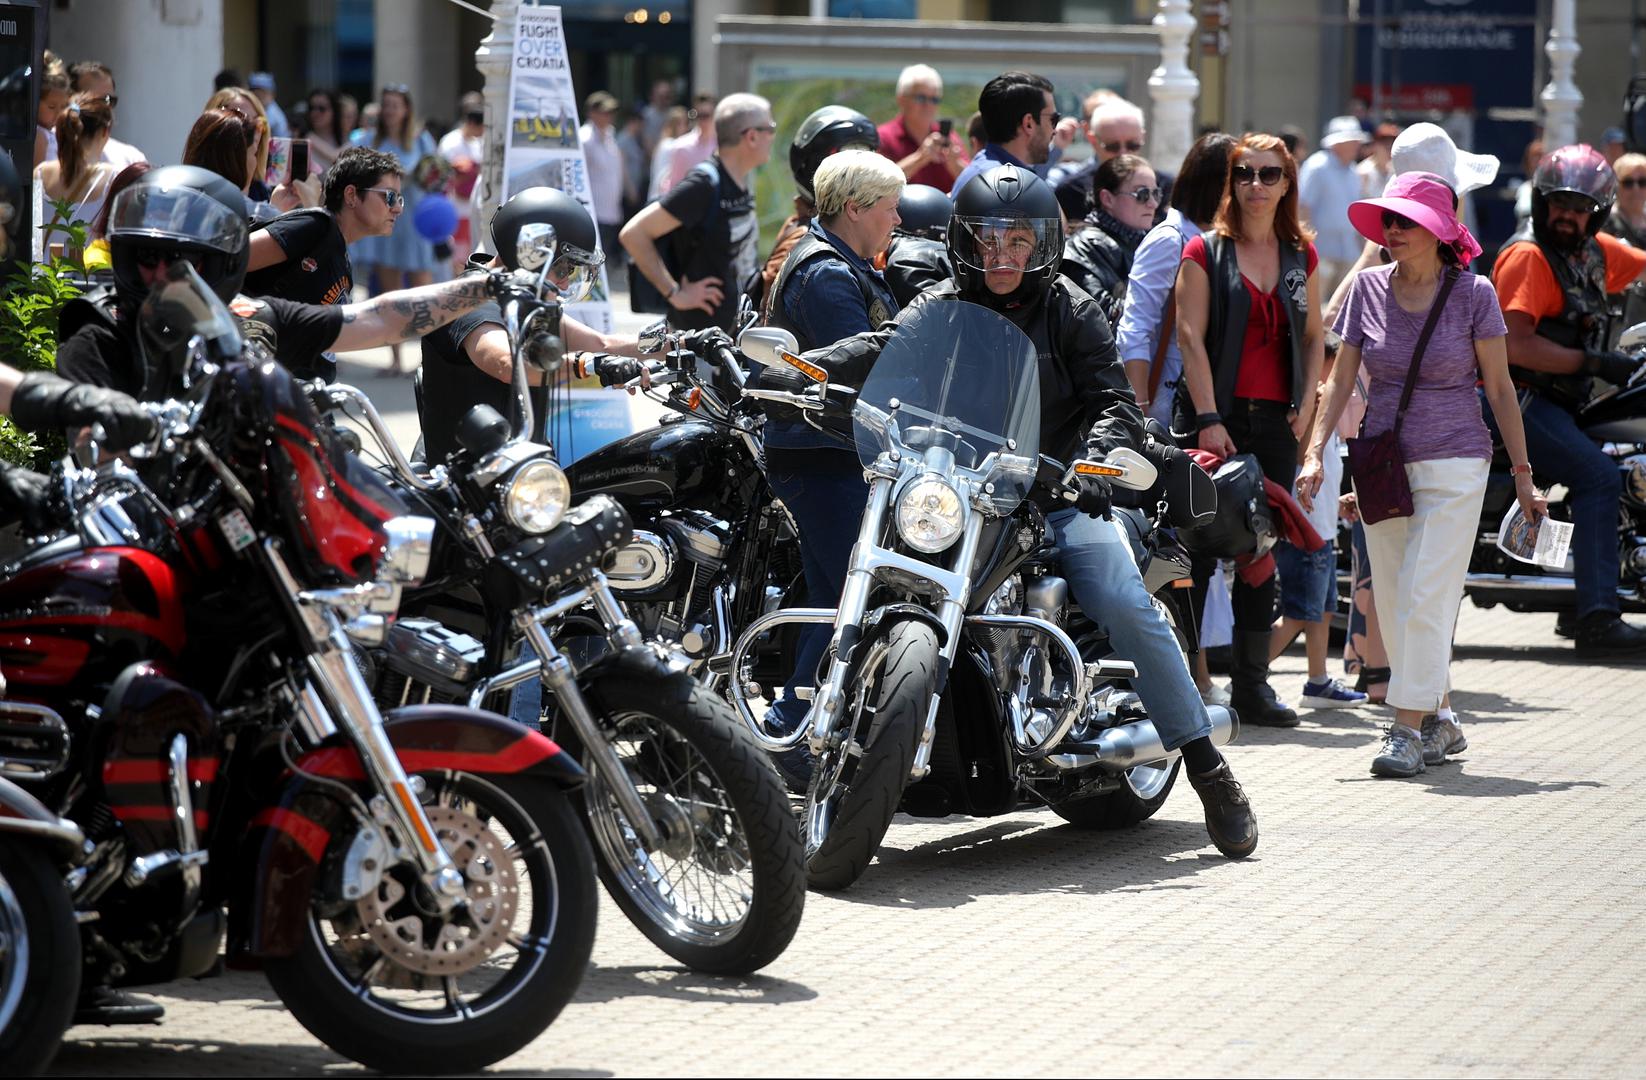 Oko 150 Harley Davidson motora okupiralo je danas Trg bana Josipa Jelačića.